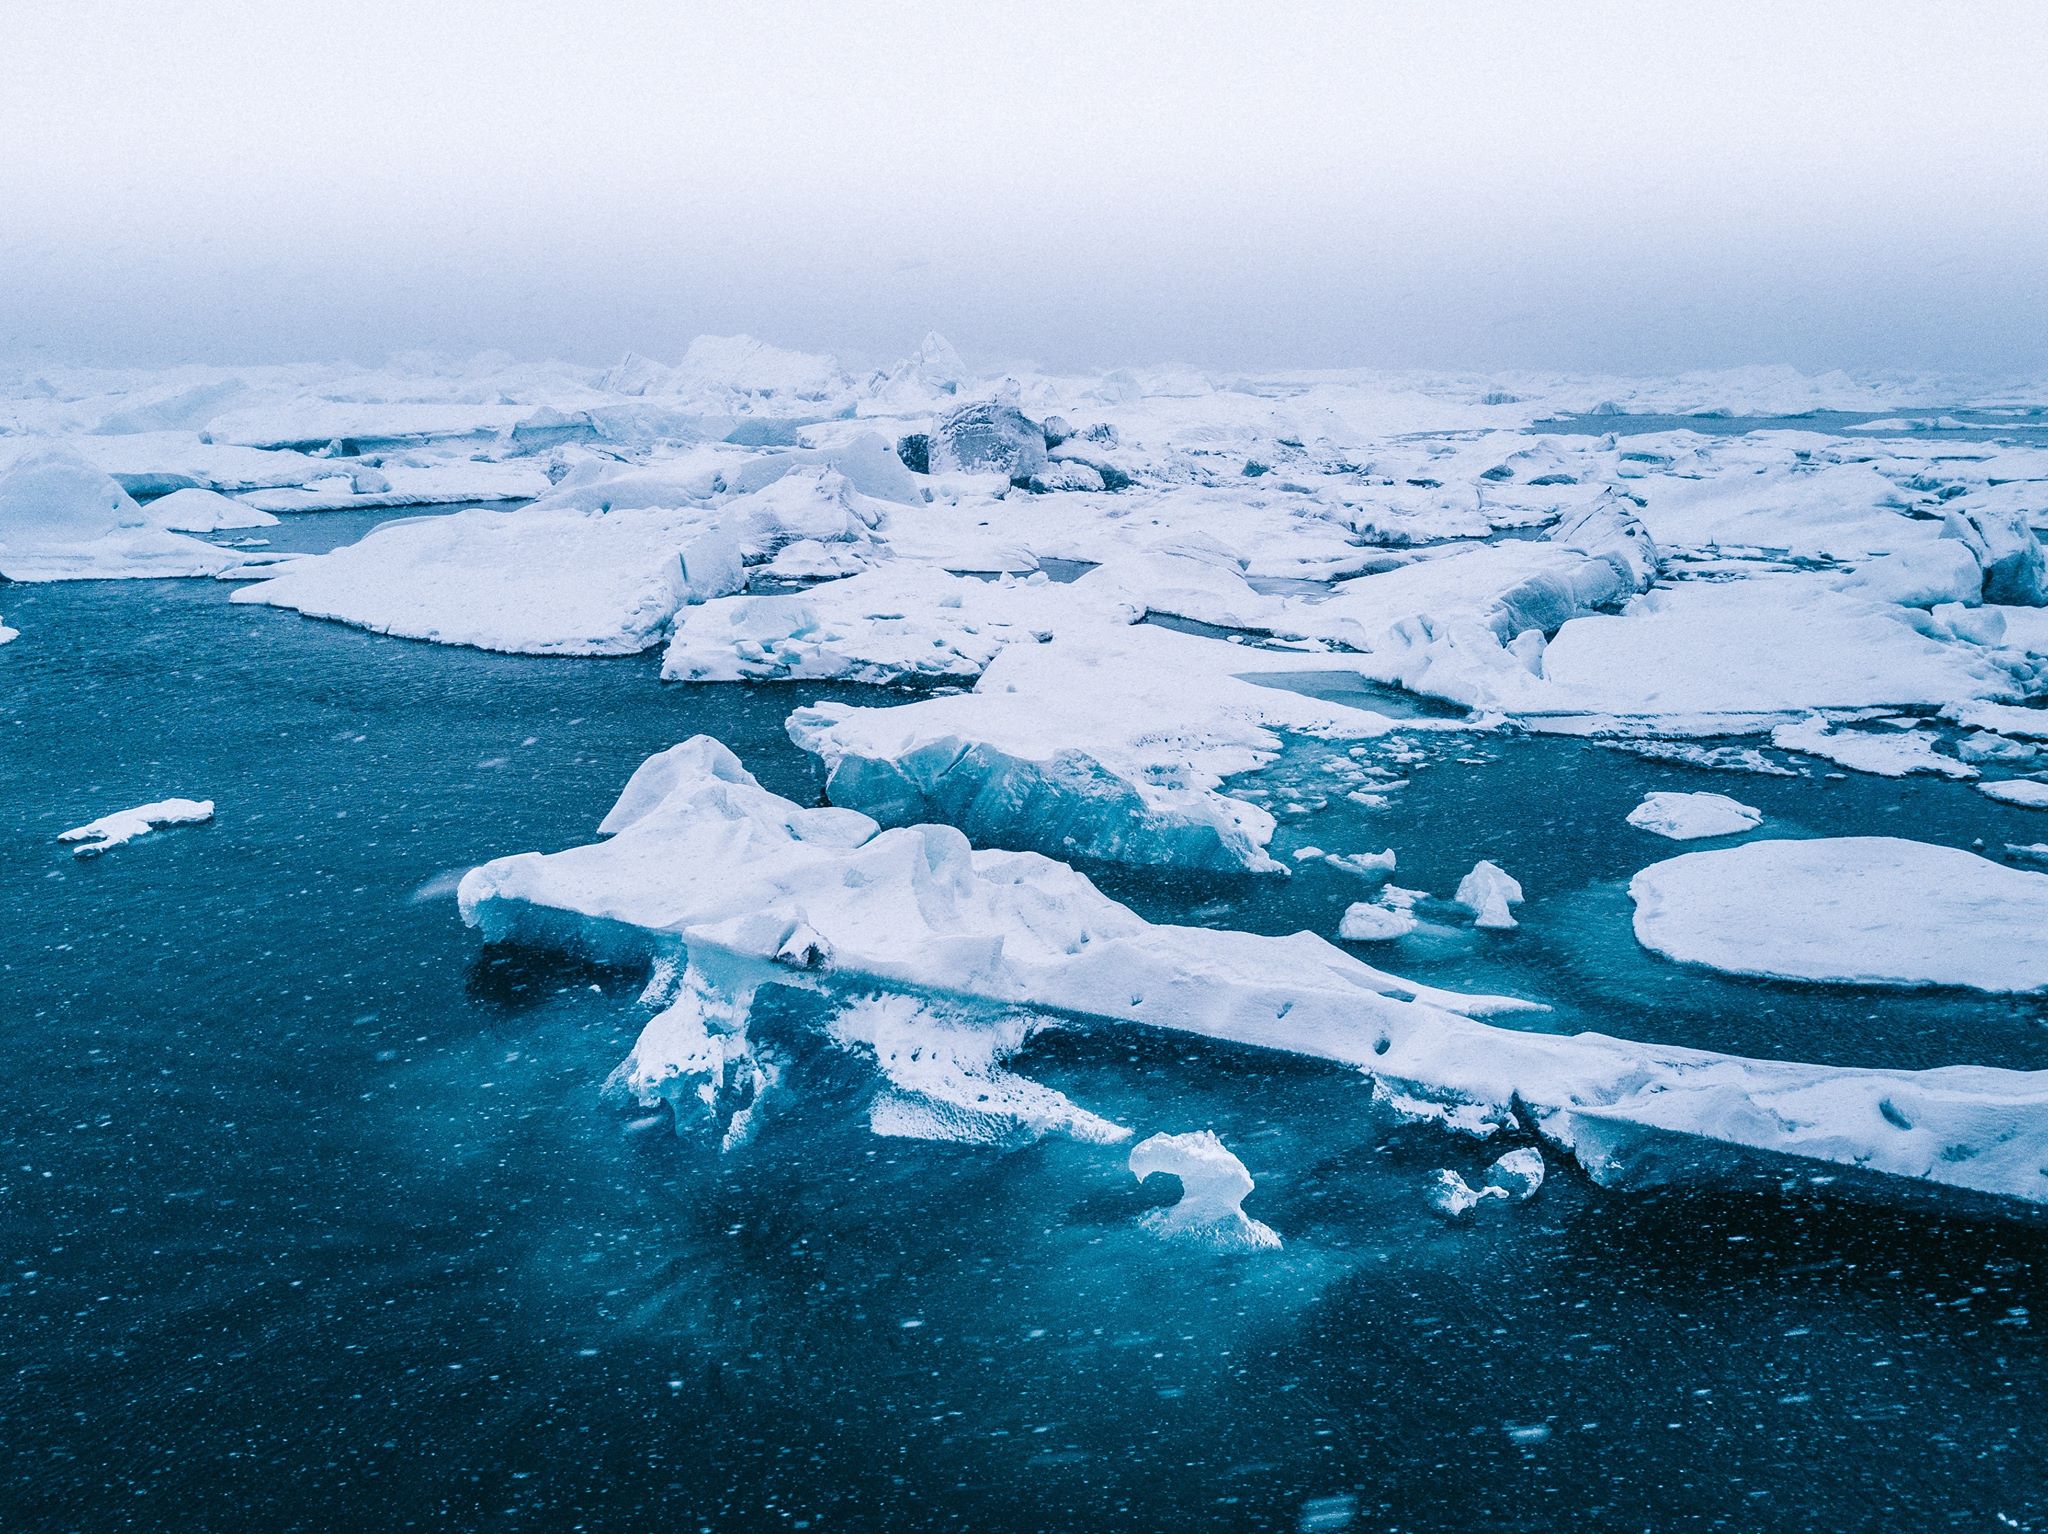 Rác thải nhựa siêu vi đã được tìm thấy tại Bắc Cực, Trái Đất chính thức bị rác "xâm chiếm"